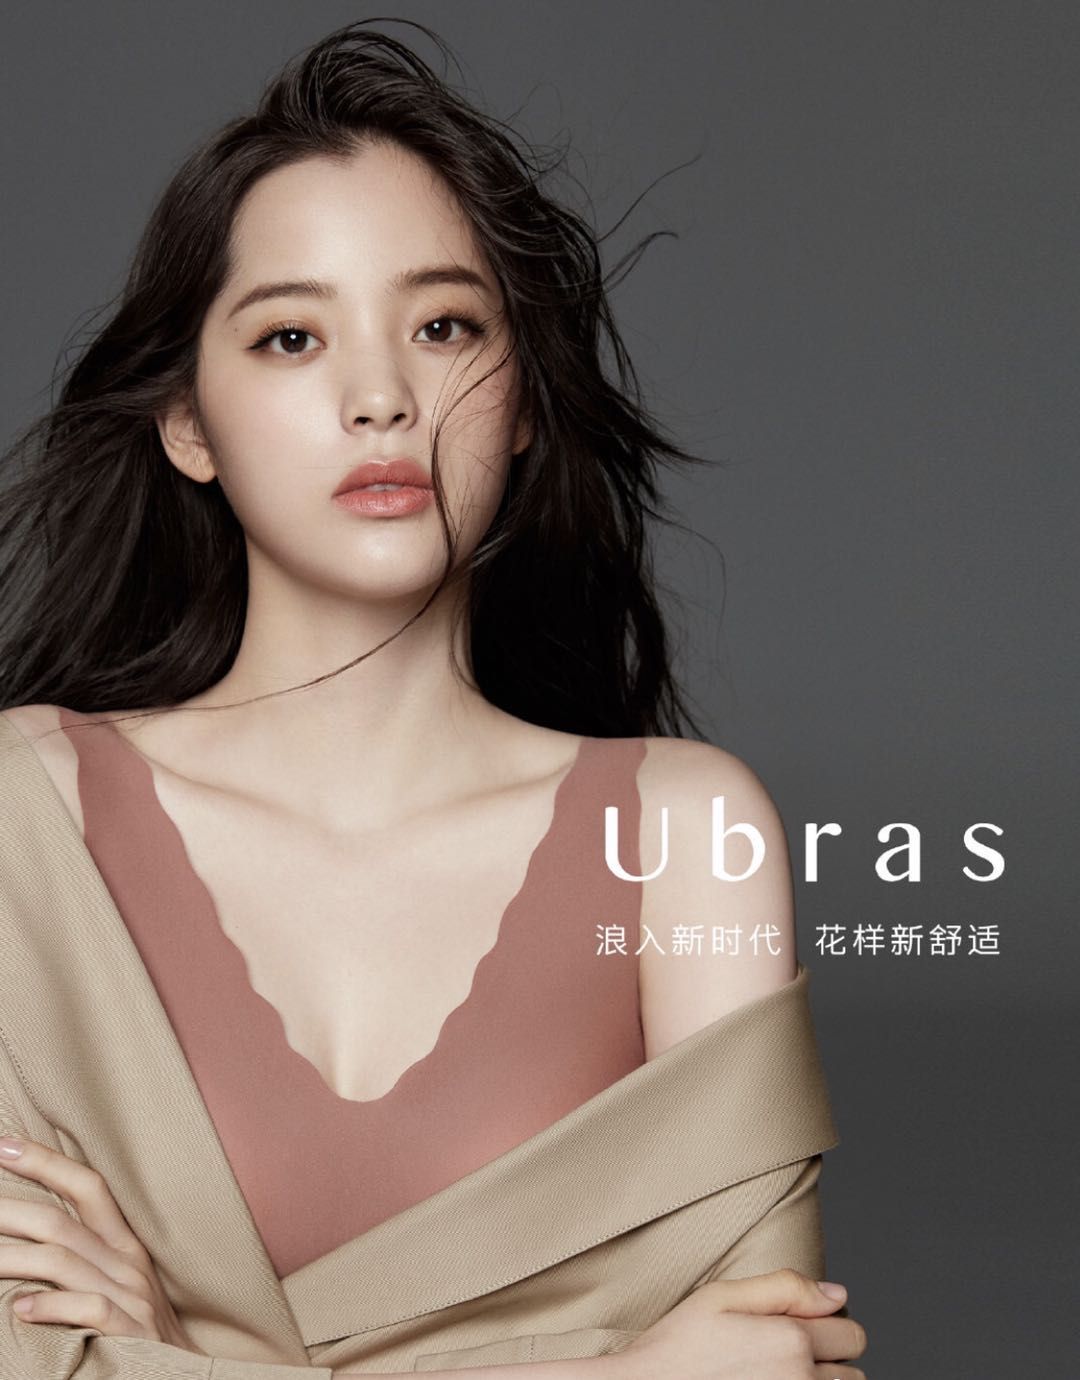 歐陽娜娜代言的國產內衣品牌Ubras完成數億元B+輪融資